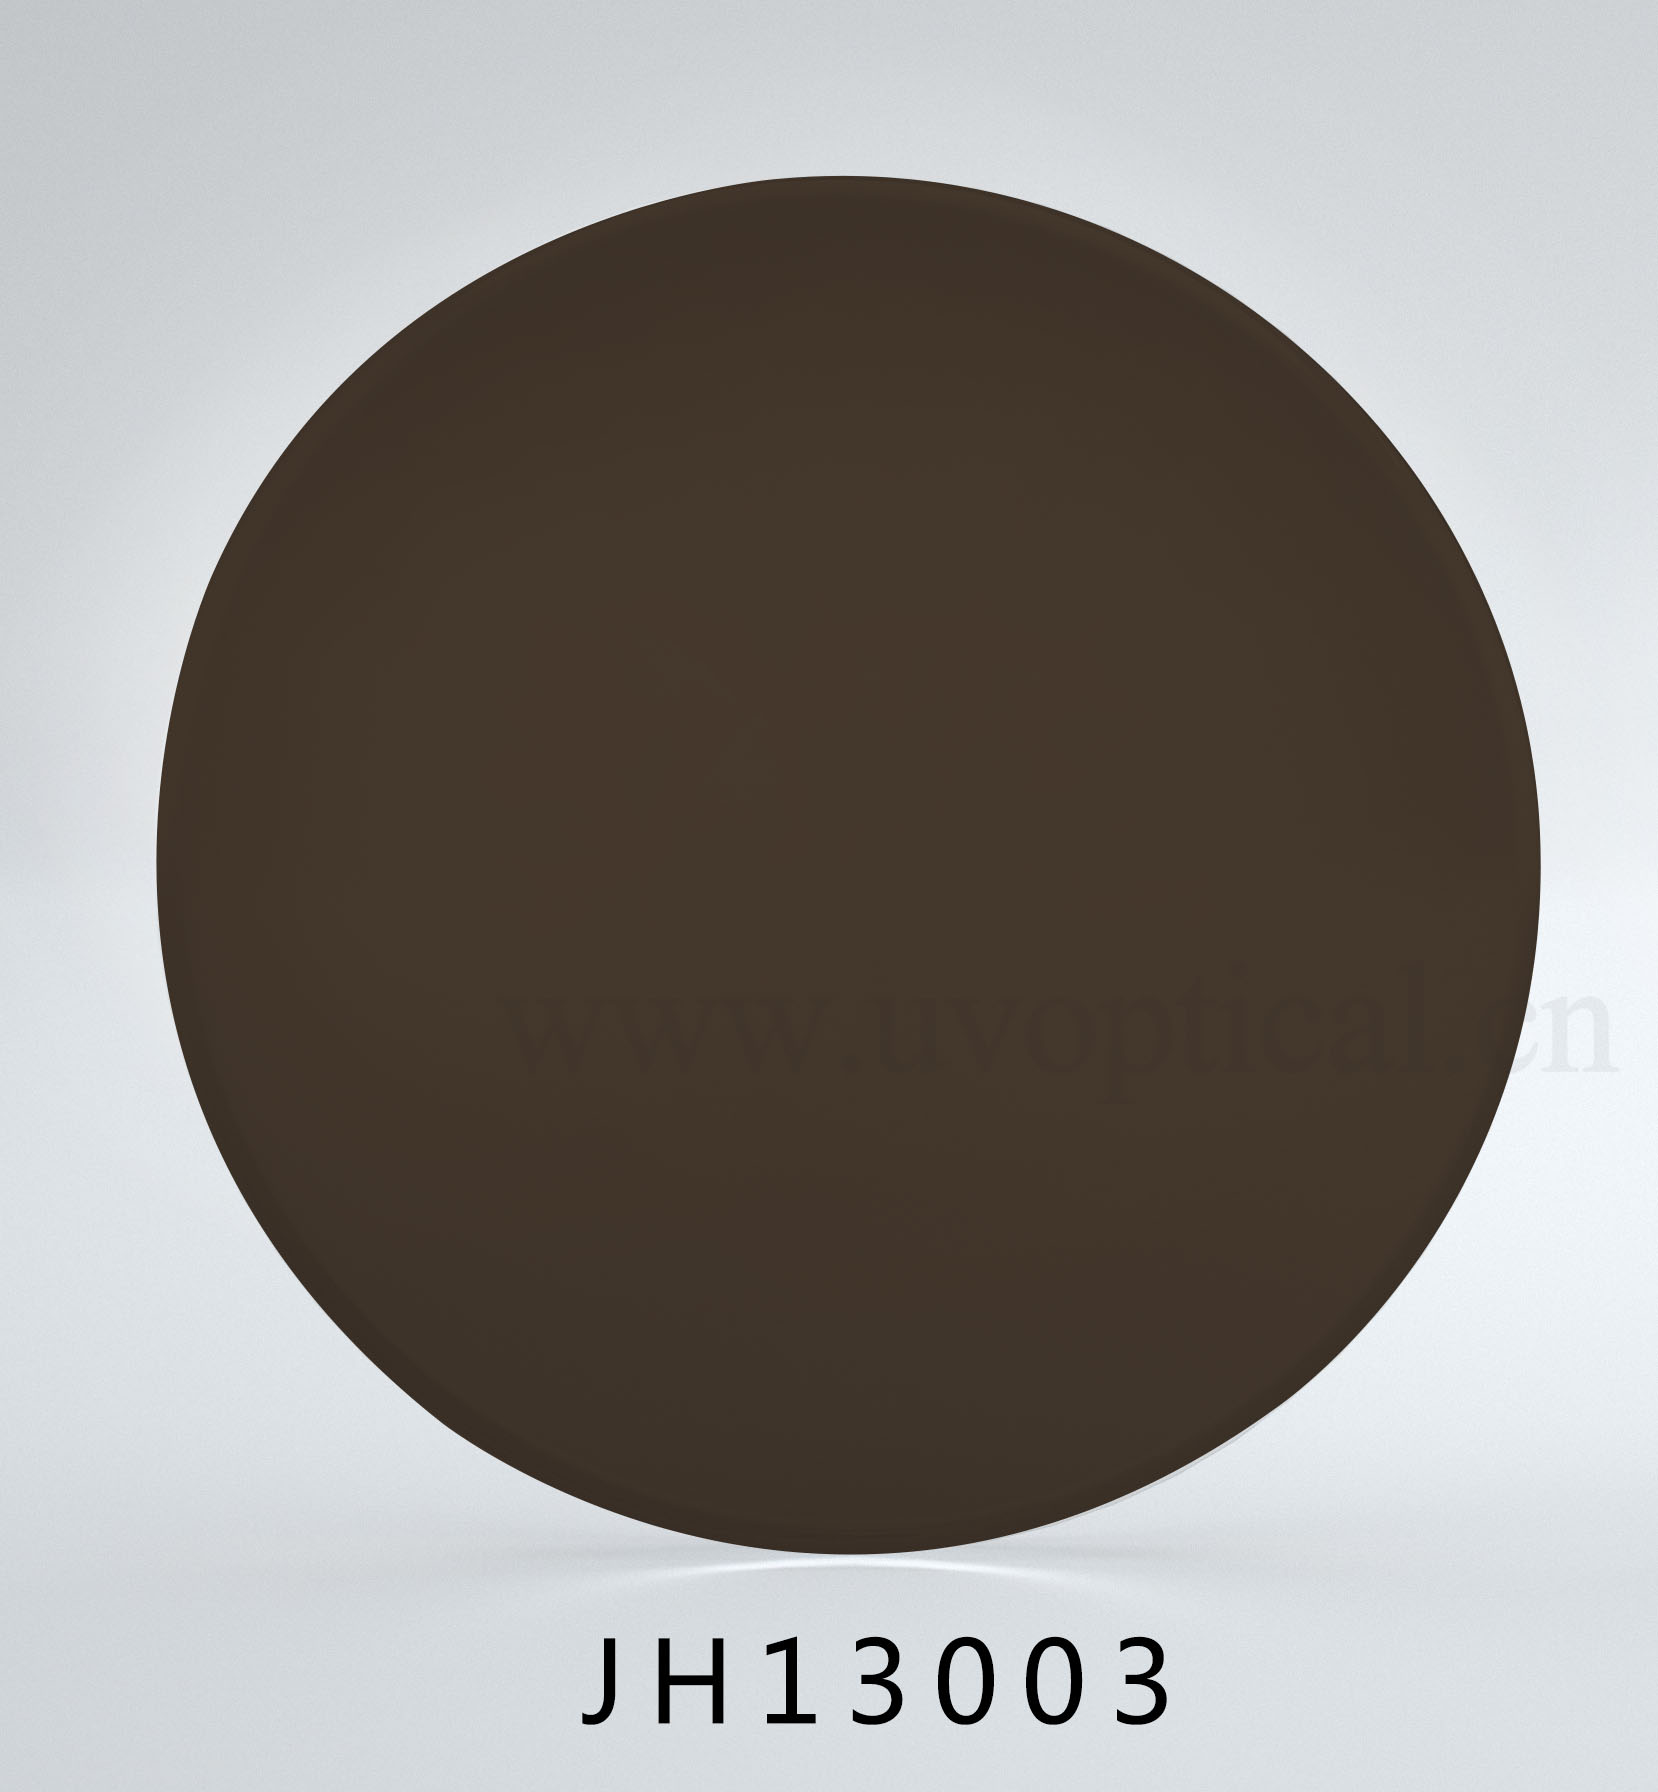 JH13003